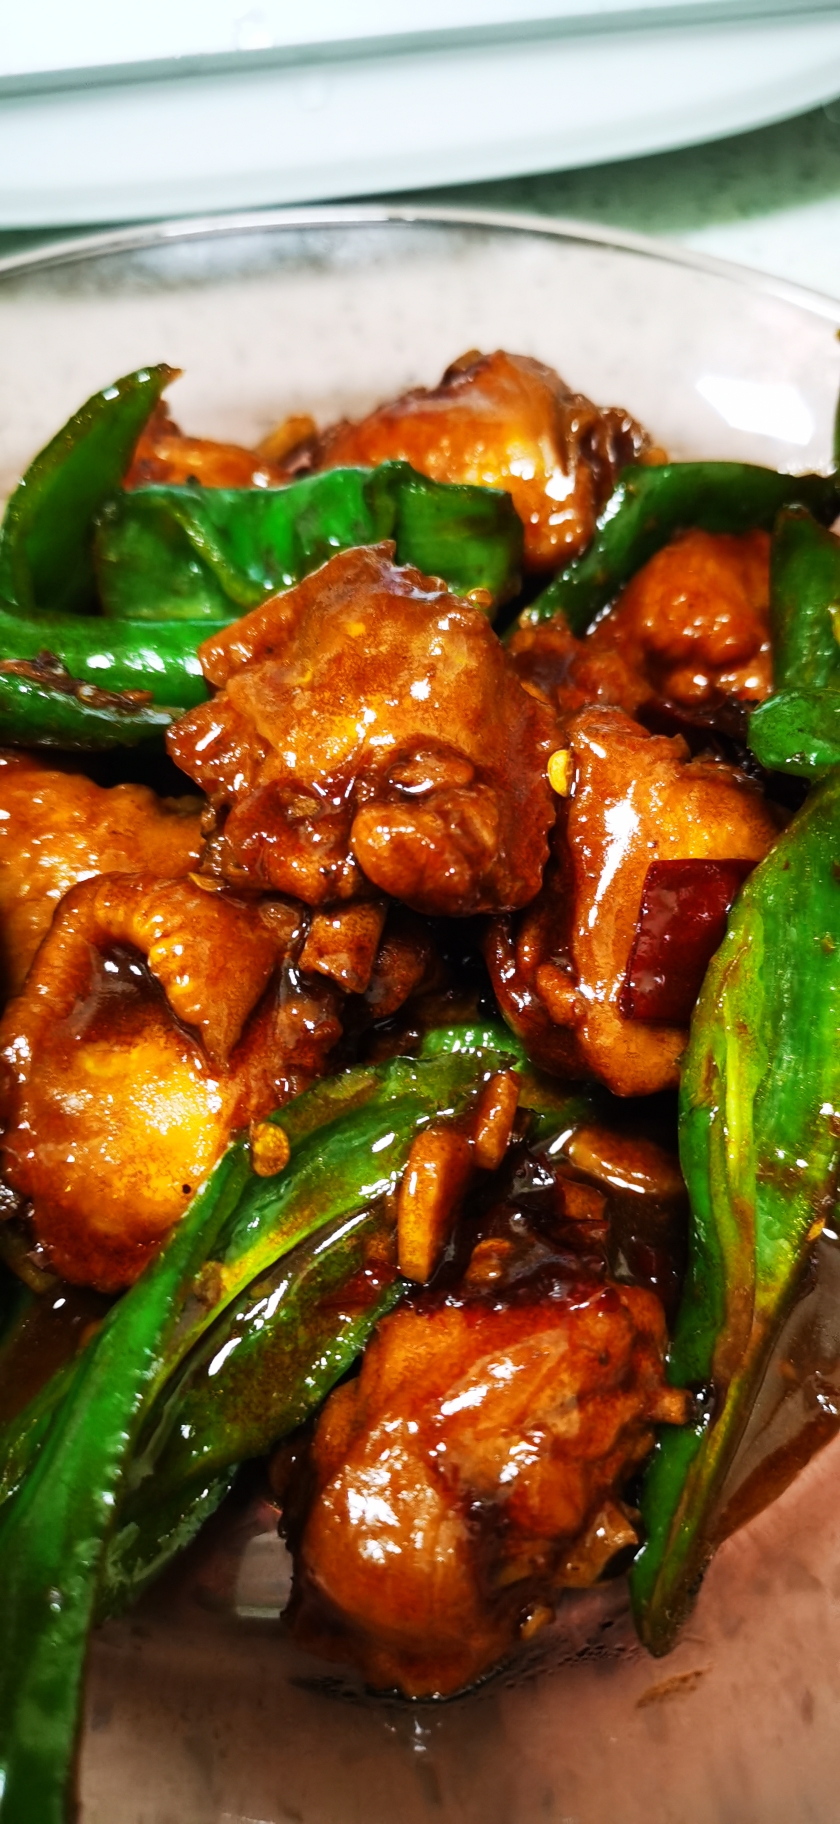 青椒鸡翅 小美版 少油无盐的家常美味 减脂期也可以放心吃 关键很美味的做法